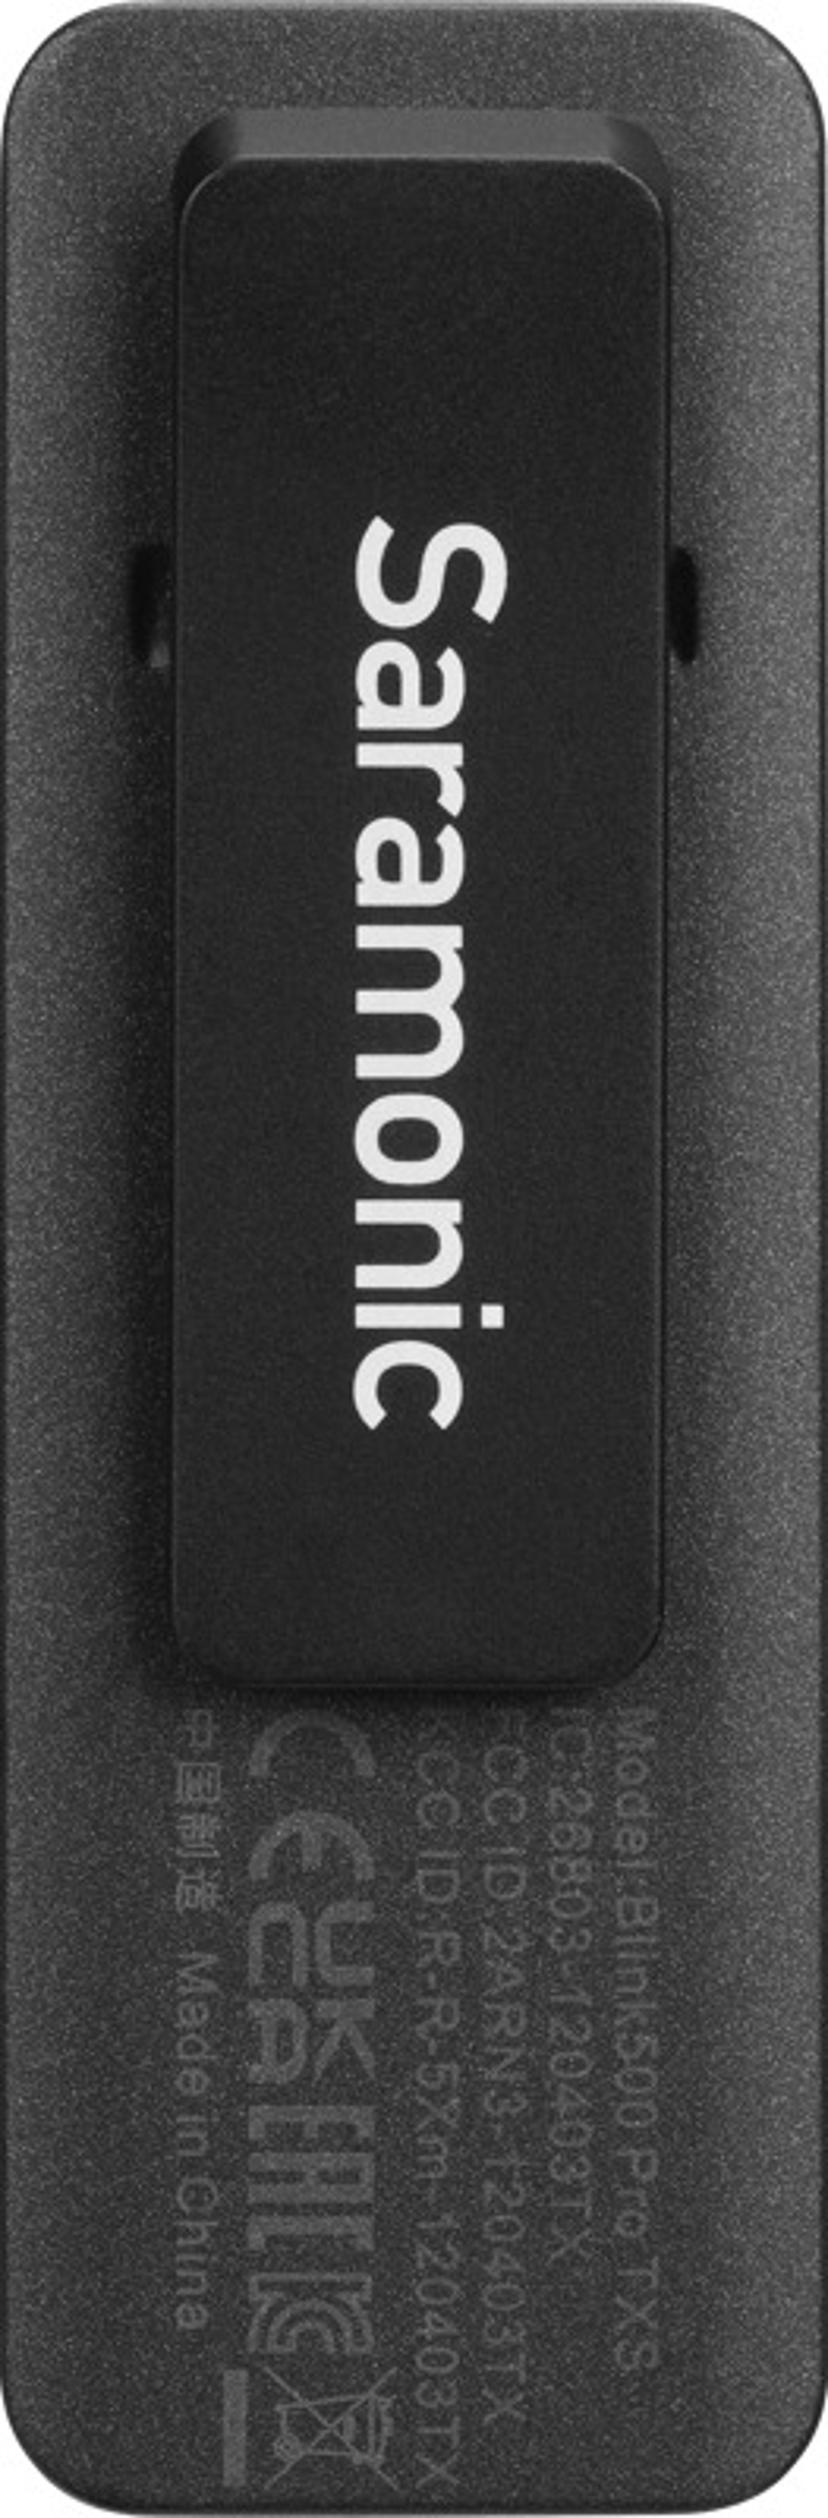 Saramonic Blink500 Pro B8